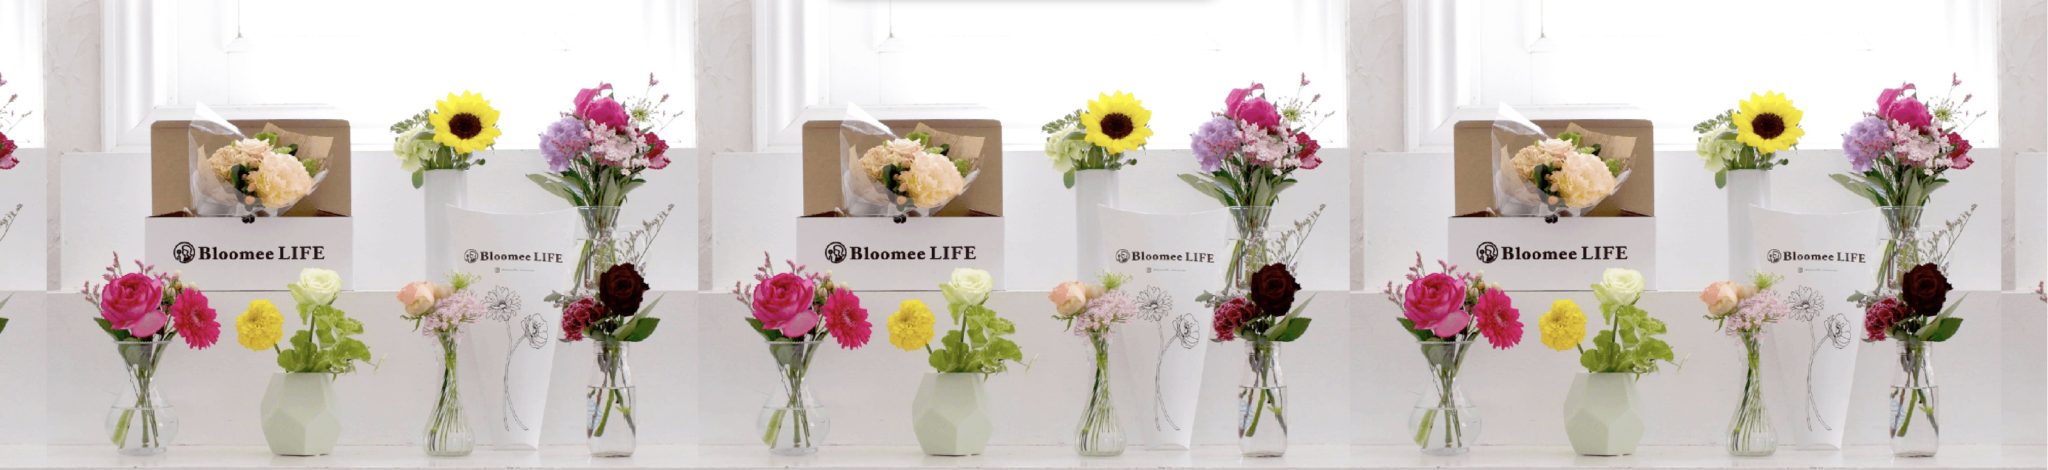 ブルーミーライフの500円から始めるお花の定期便サービス初回無料クーポンキャンペーン中